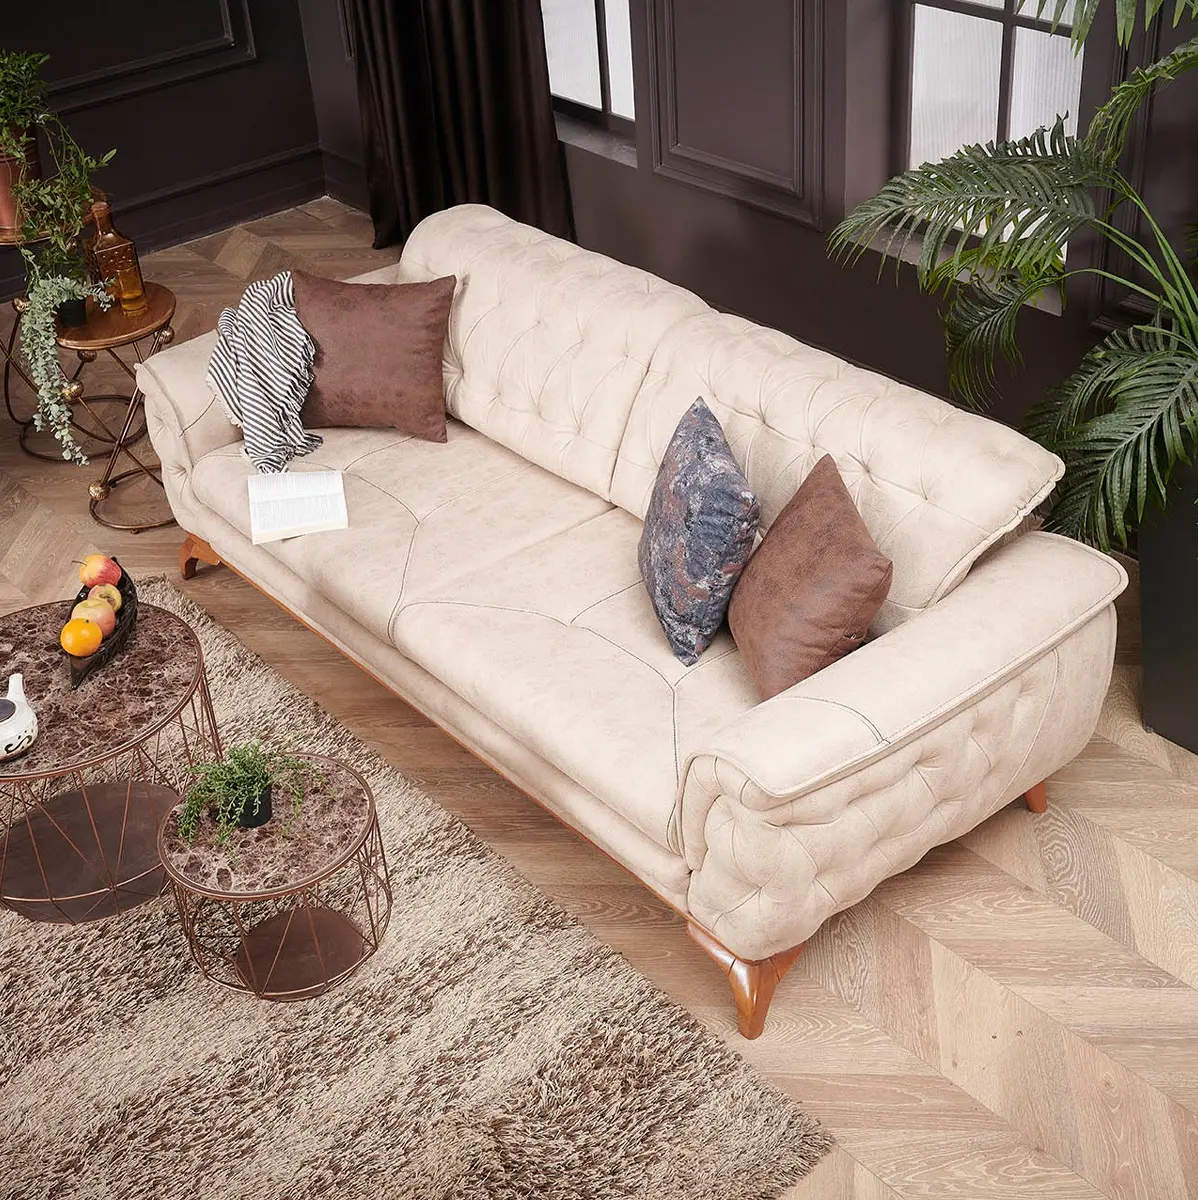 Домашний гостиничный диван Chesterfield, кожаный диван ручной работы для гостиной, кресло размера 3, 2, 1, Угловое сиденье, Bergere, фабрика турецкой мебели